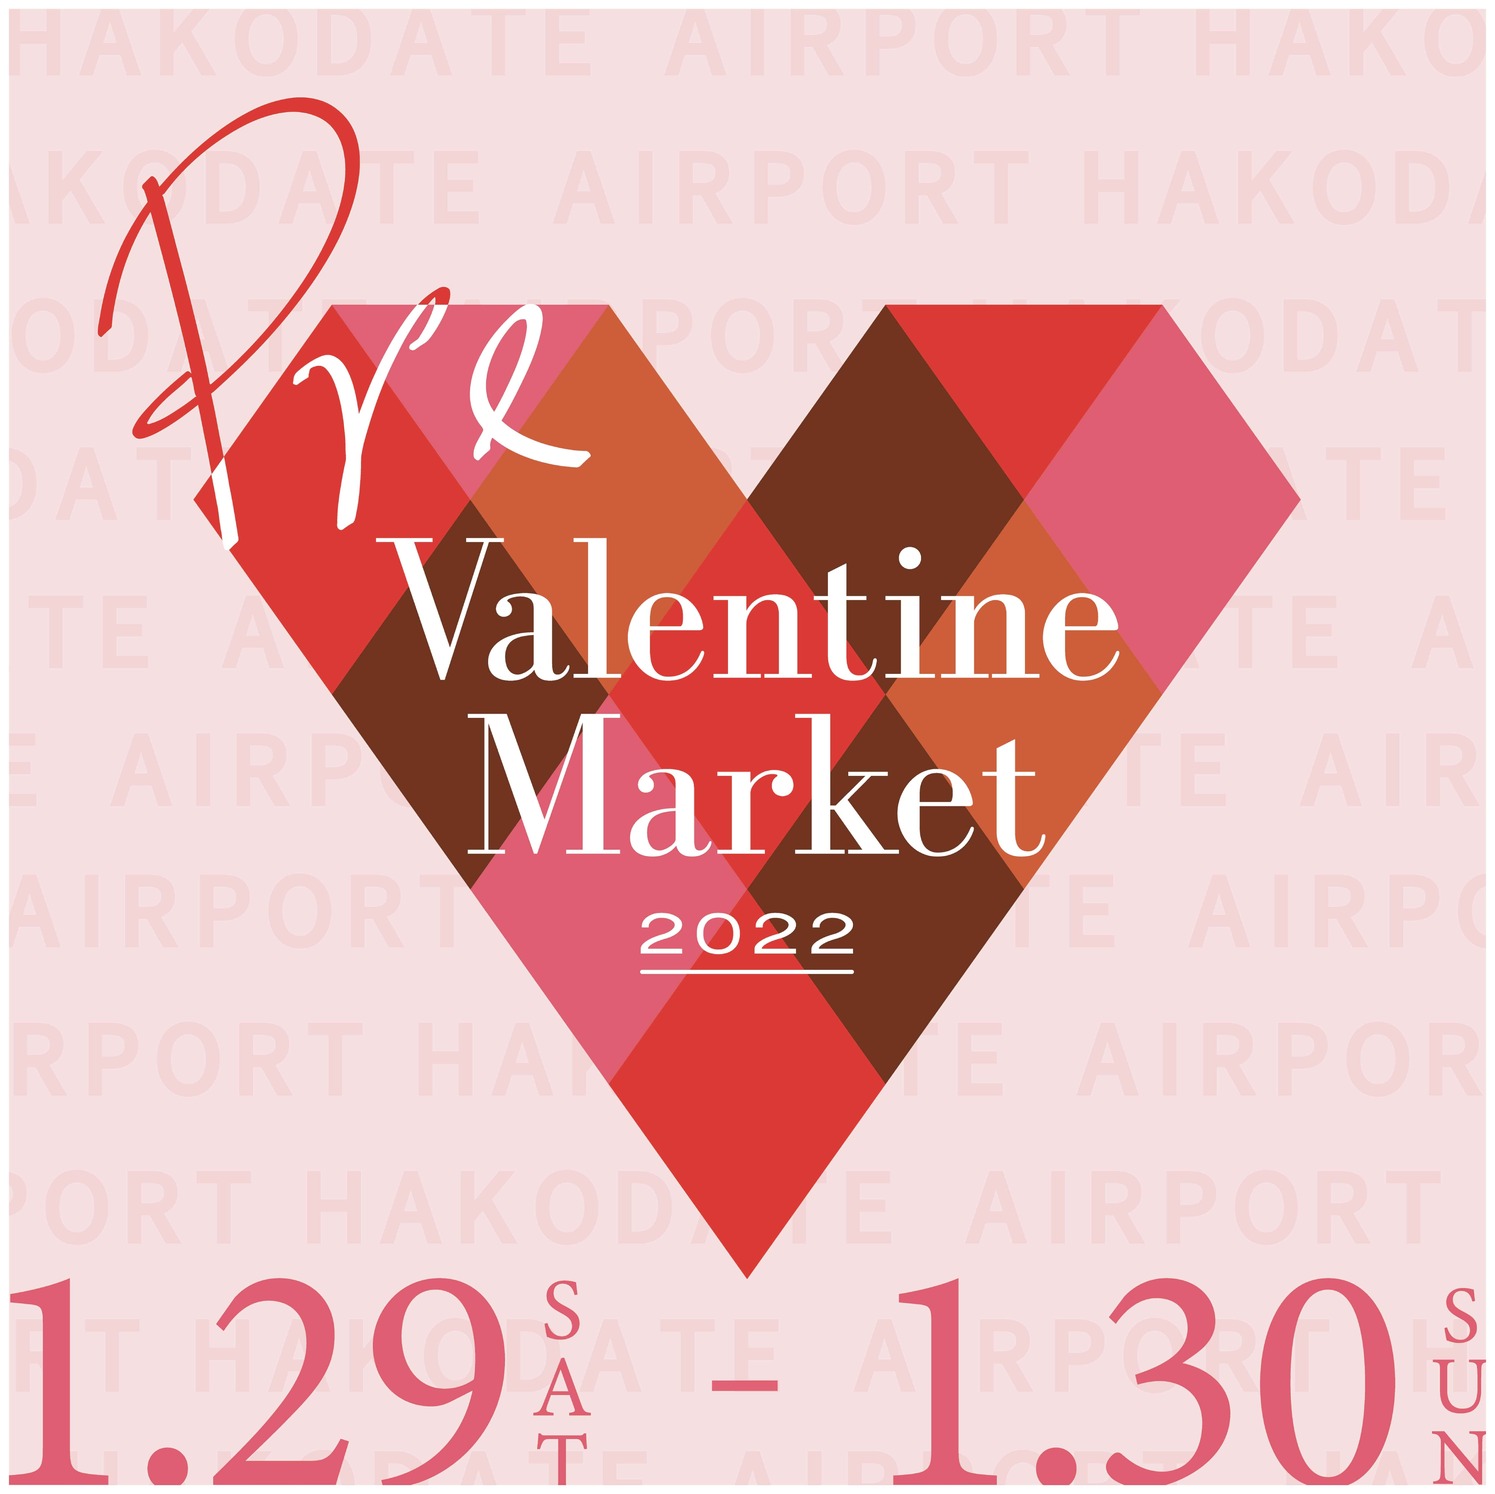 「Pre-Valentine Market in 函館空港」の開催-東京 丸の内の上質スイーツ-